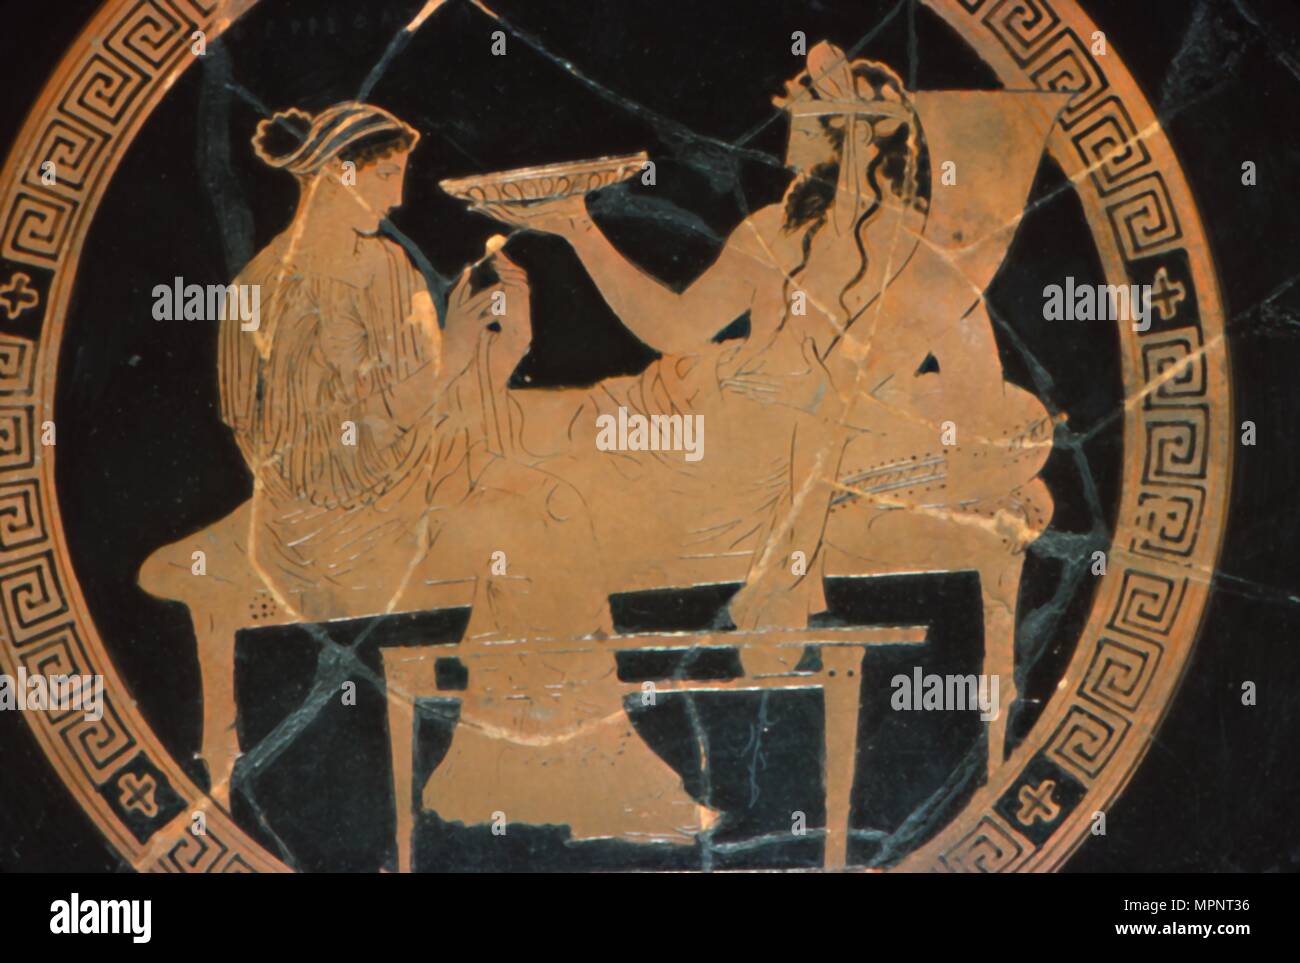 Griechische Vase Malerei, Persephone und Hades Bankett in der Underwold, c 430 v. Chr.. Artist: Codrus Maler. Stockfoto